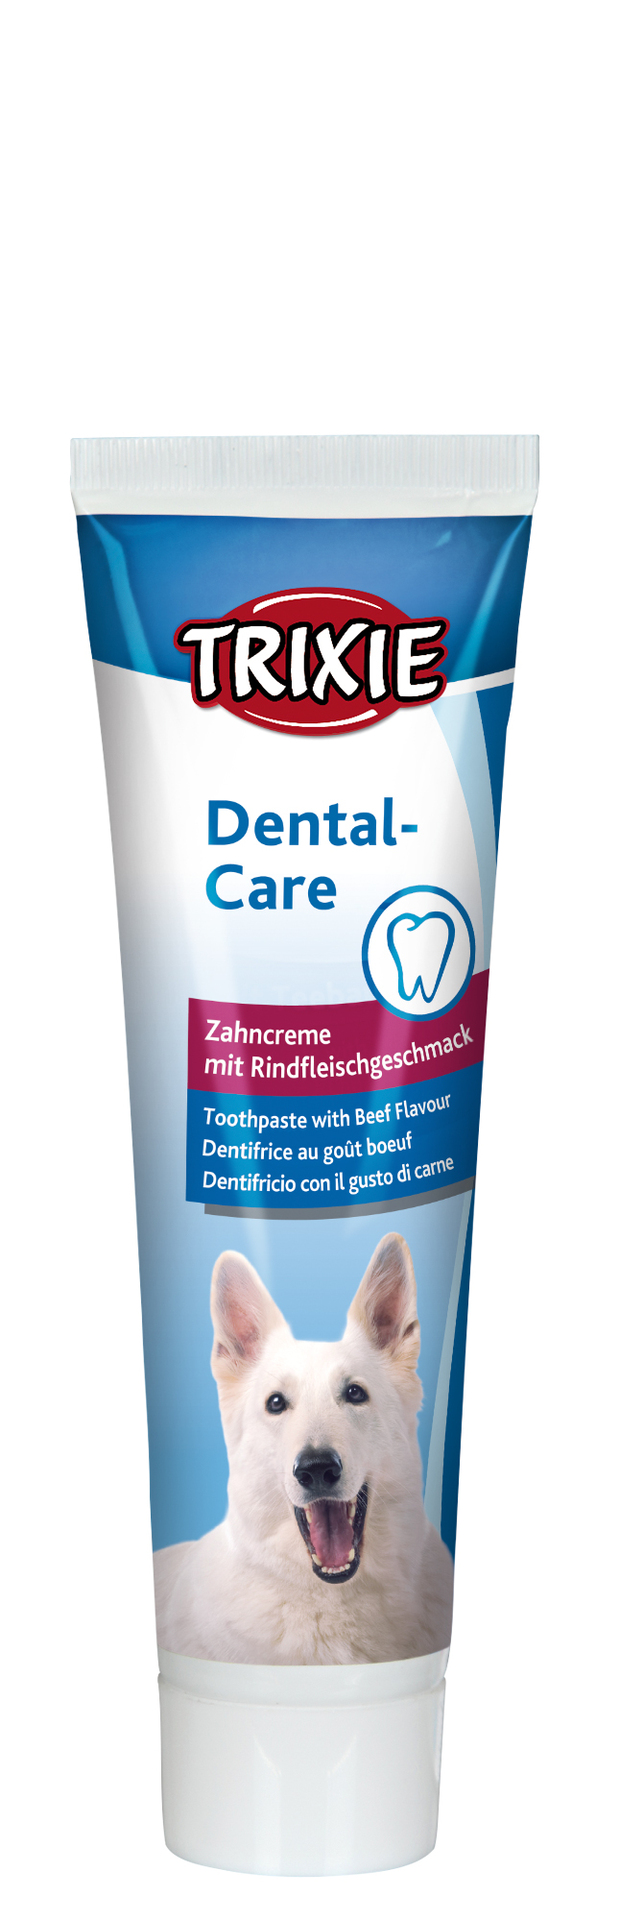 Trixie Heimtierbedarf Zahncreme mit Rindfleischaroma